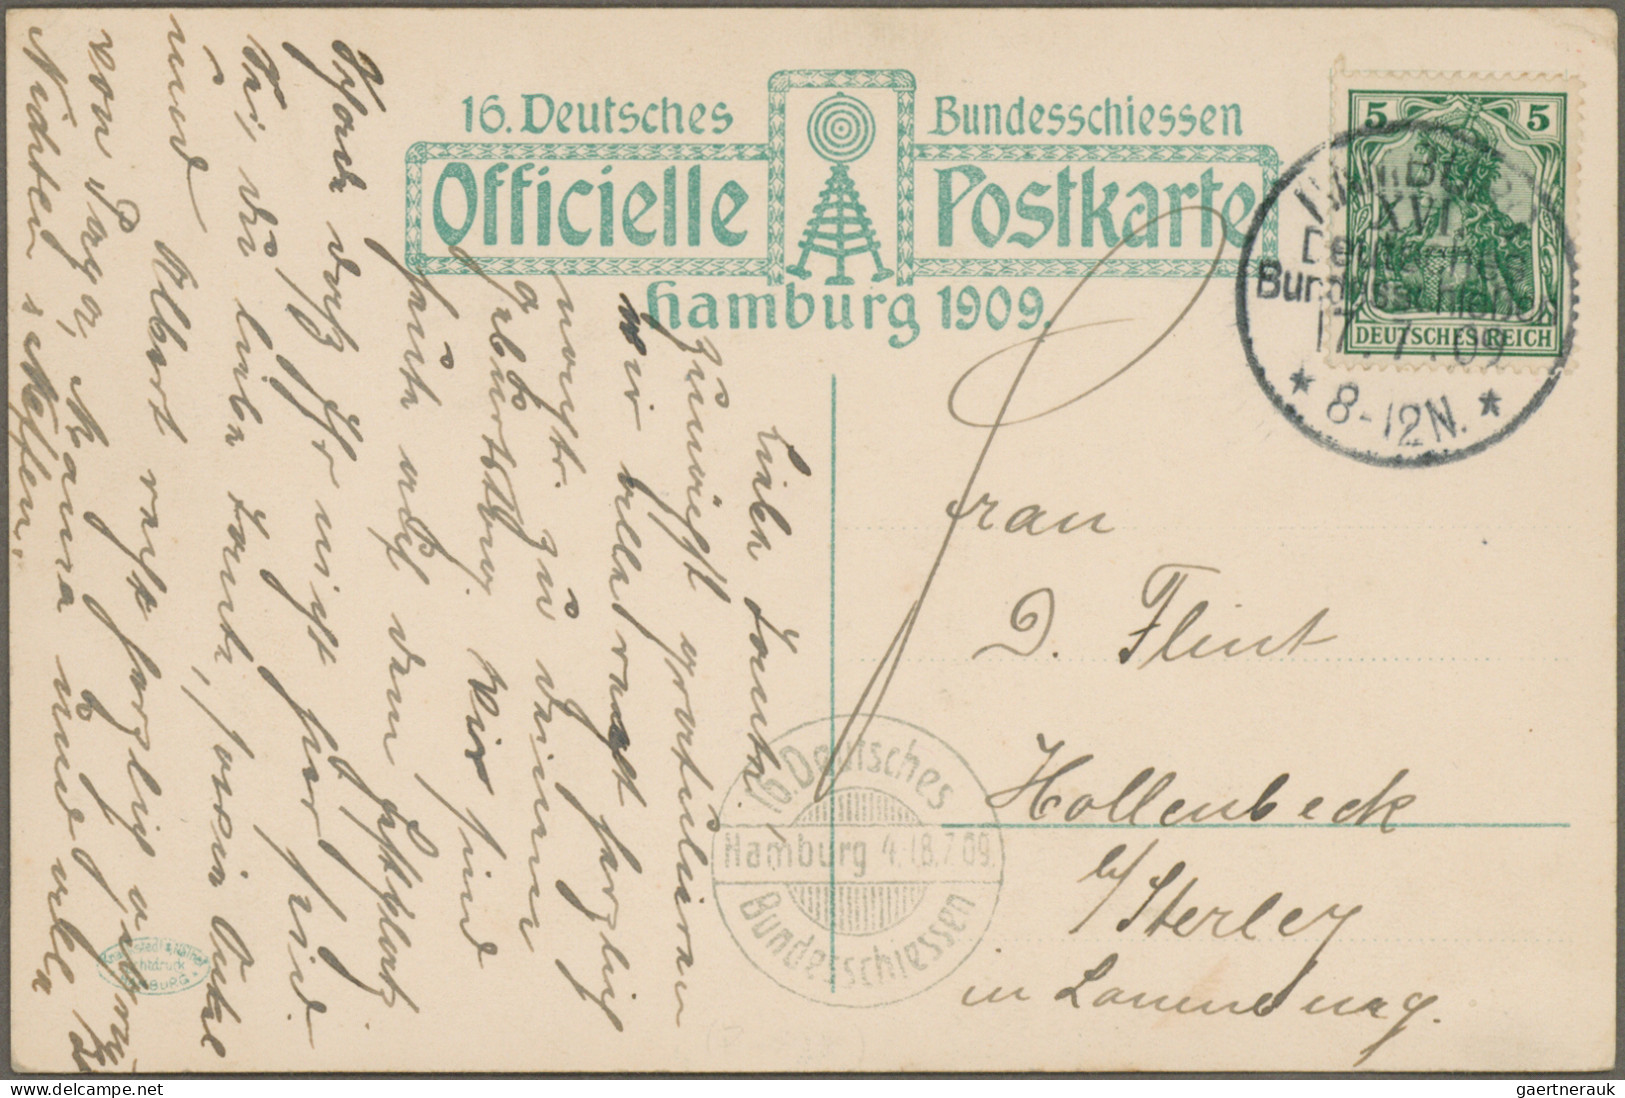 Heimat: Hamburg: 1869/1932, Partie von 31 Belegen, dabei etliche Ansichtskarten,